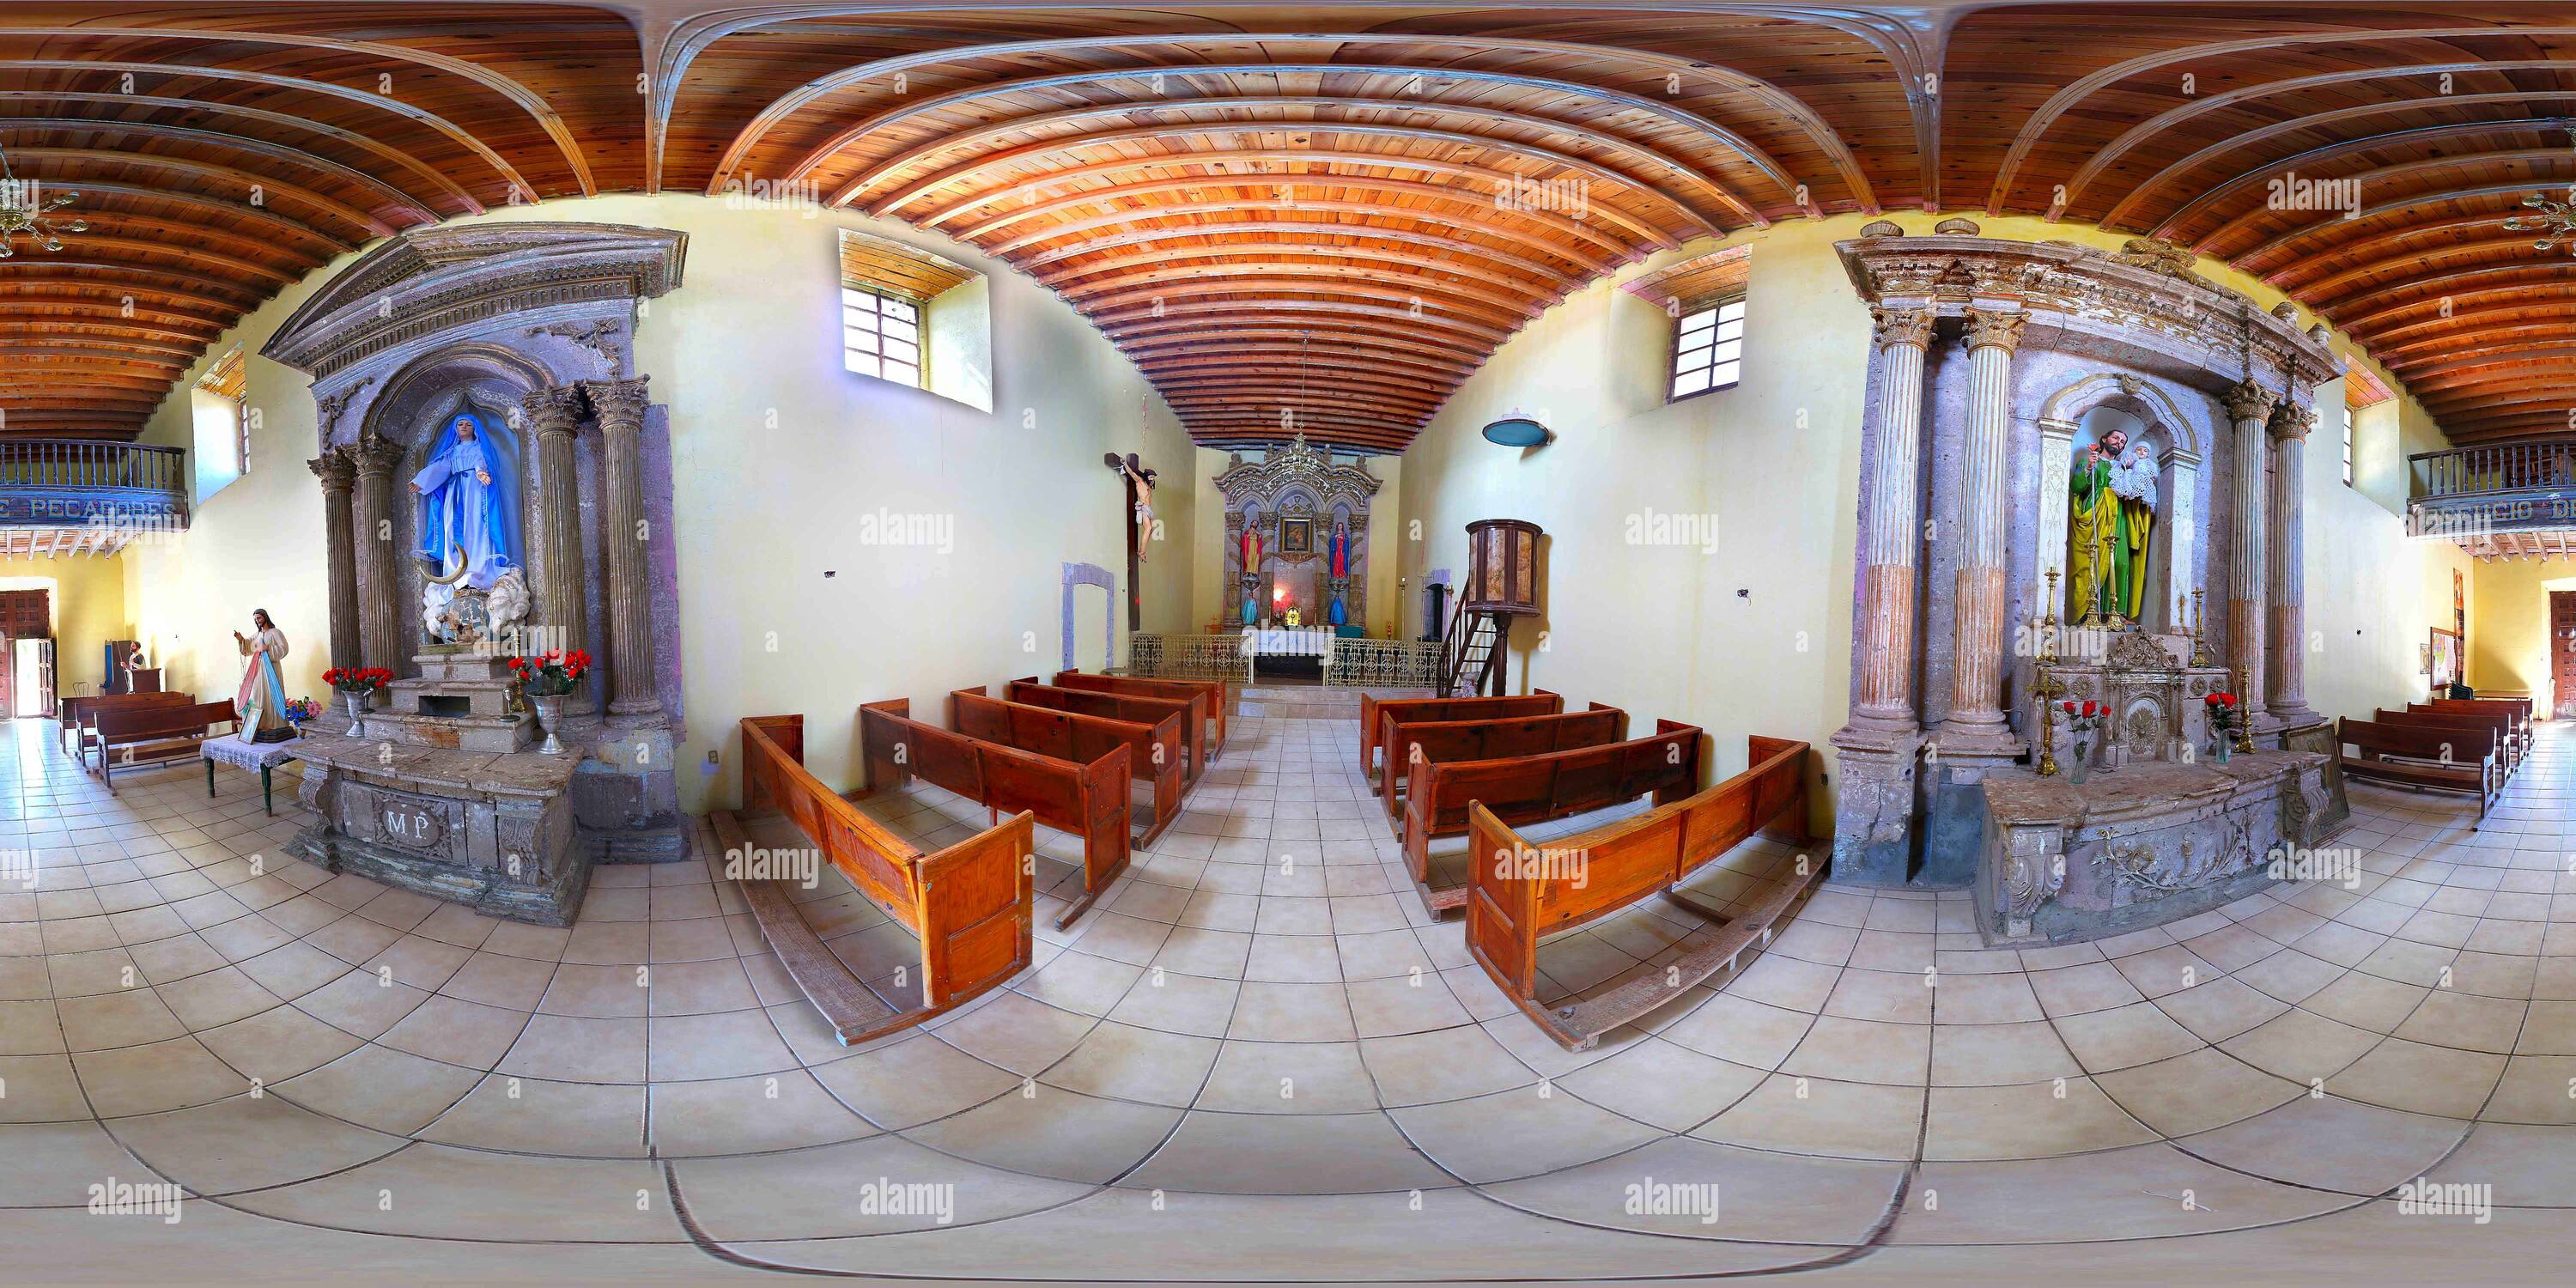 360 degree panoramic view of Iglesia de la antigua Hacienda de la Goma en el estado de Durango